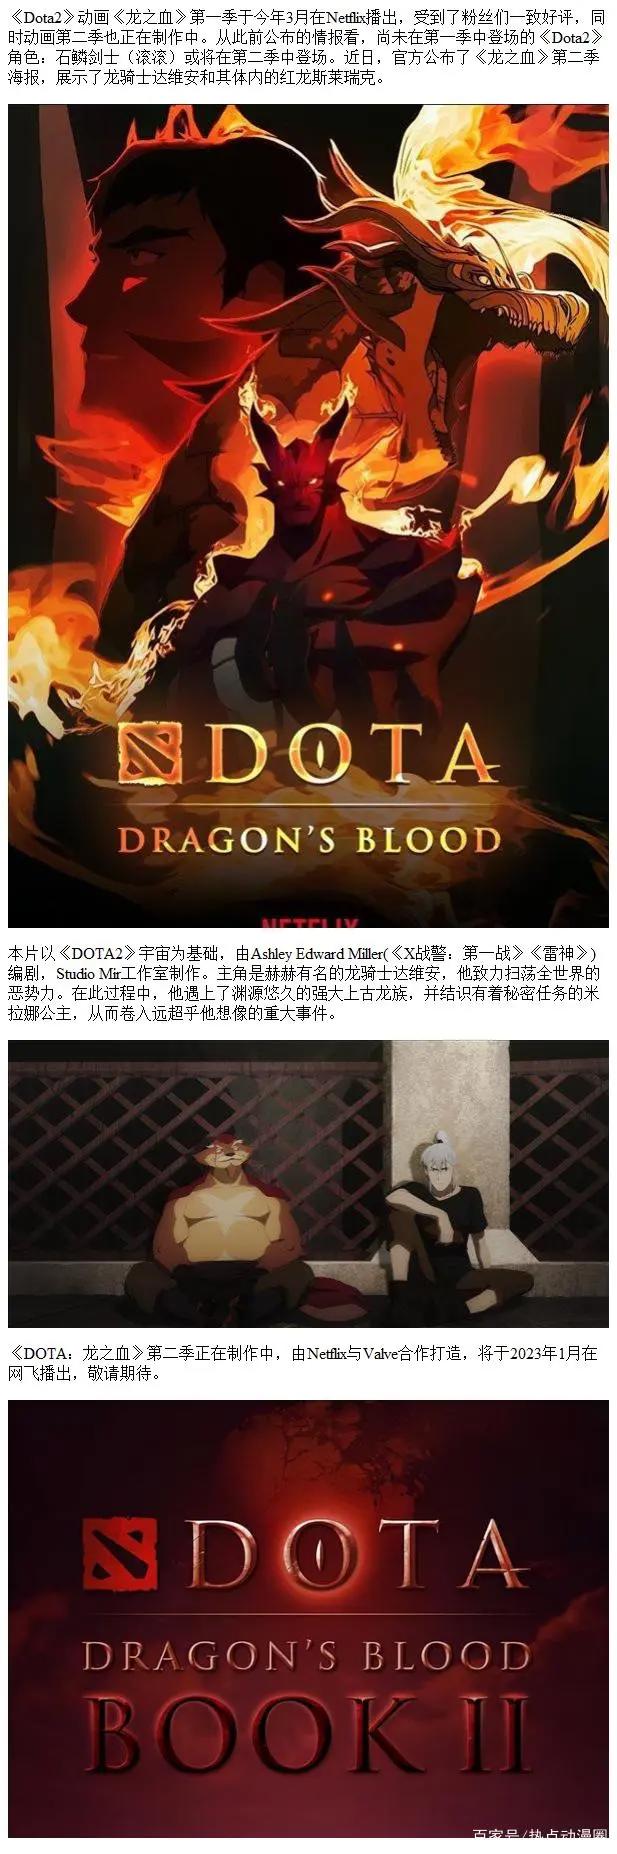 《Dota：龙之血》第二季海报达维安及红龙斯莱瑞克